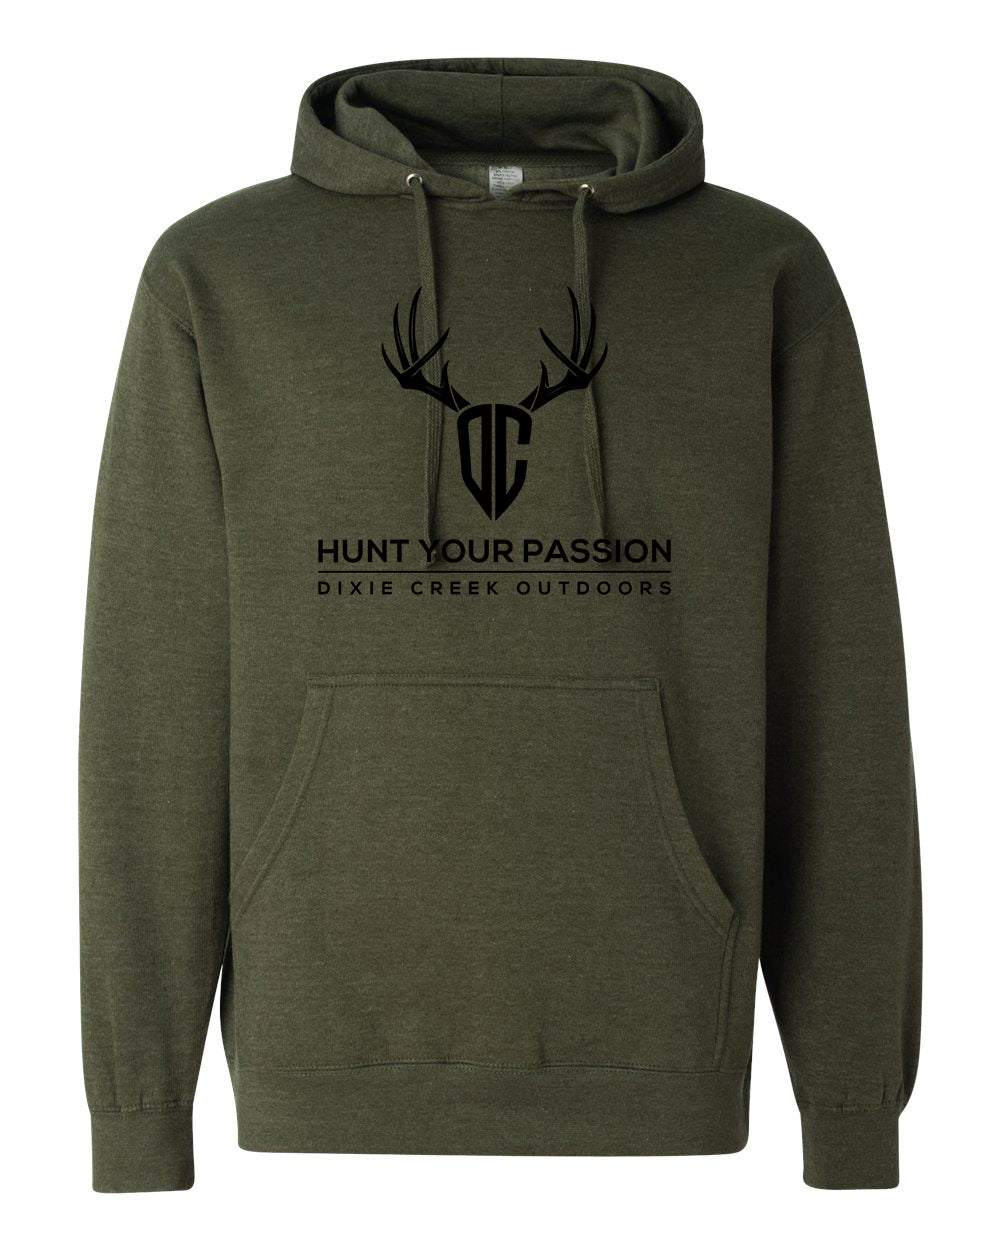 DCO Antlers Hoodie - Black Print